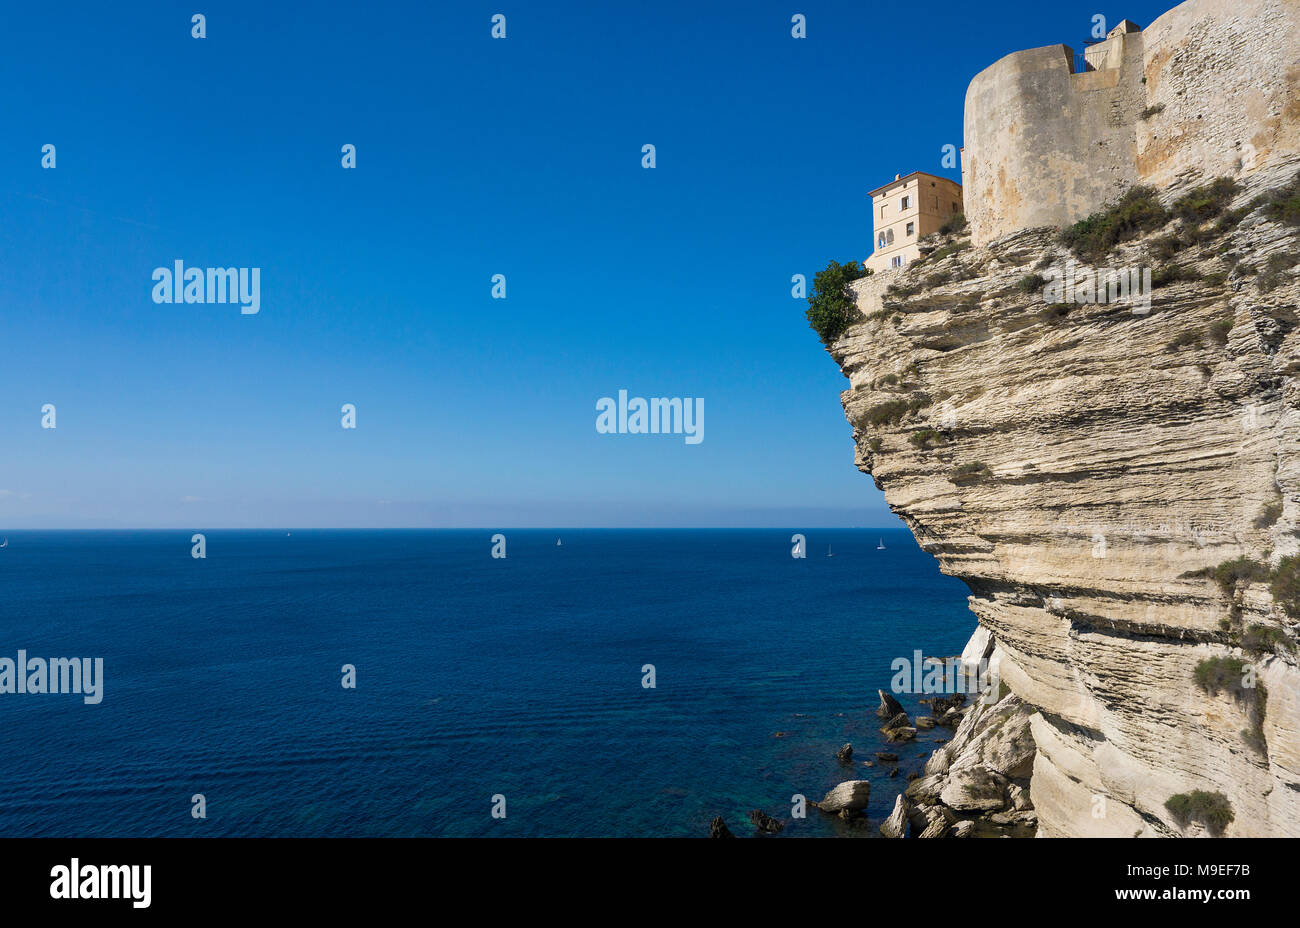 Citadelle de Bonifacio, construit sur une falaise chalkstone, détroit de Bonifacio, Corse, France, Europe, Méditerranée Banque D'Images